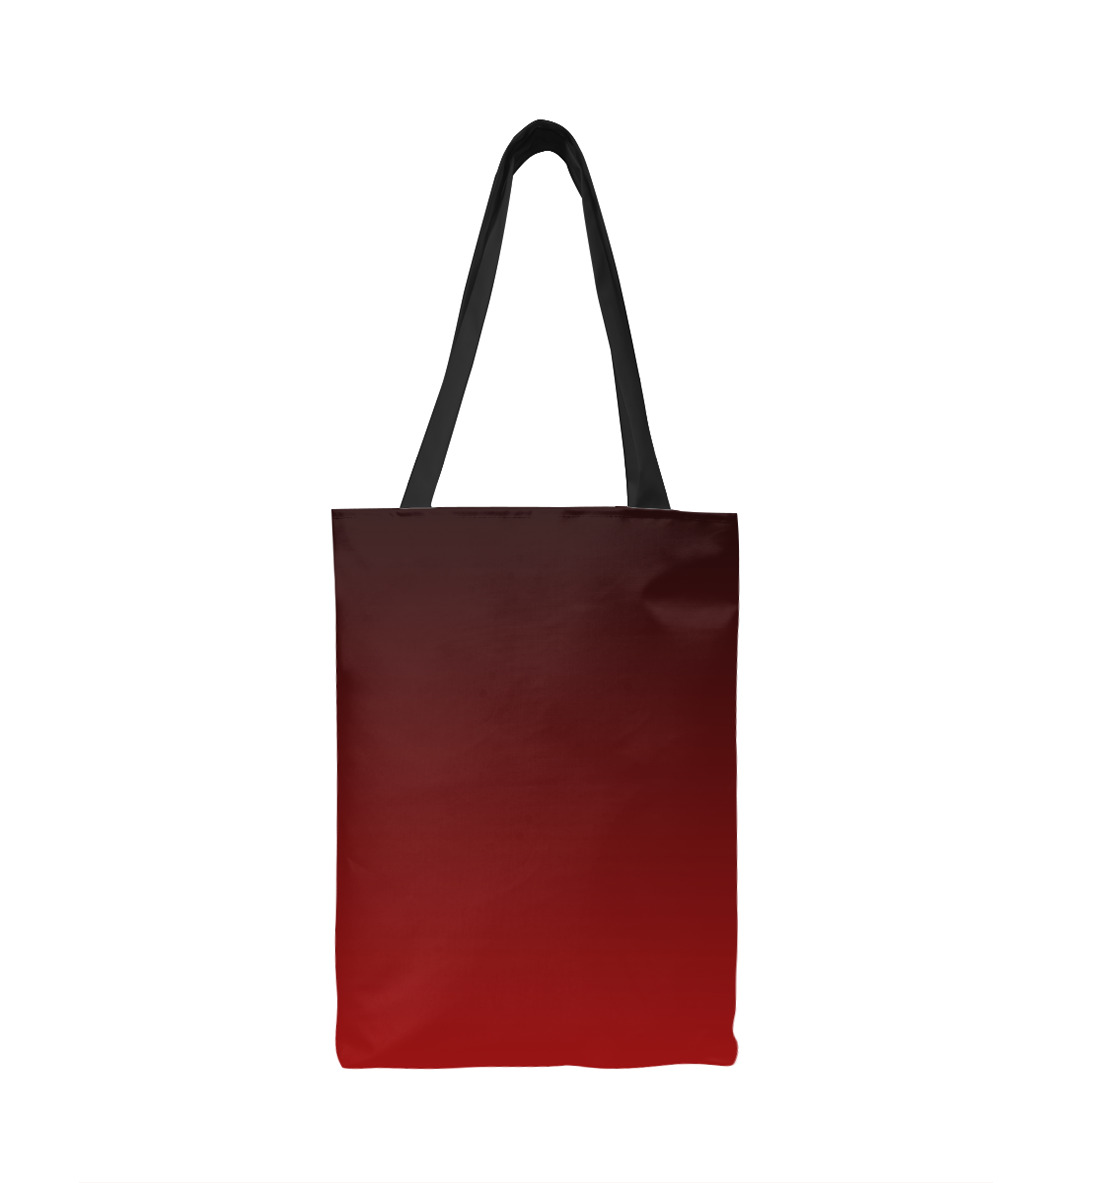 Купить Сумка-шоппер Градиент Красный в Черный, артикул CLR-933713-susmp